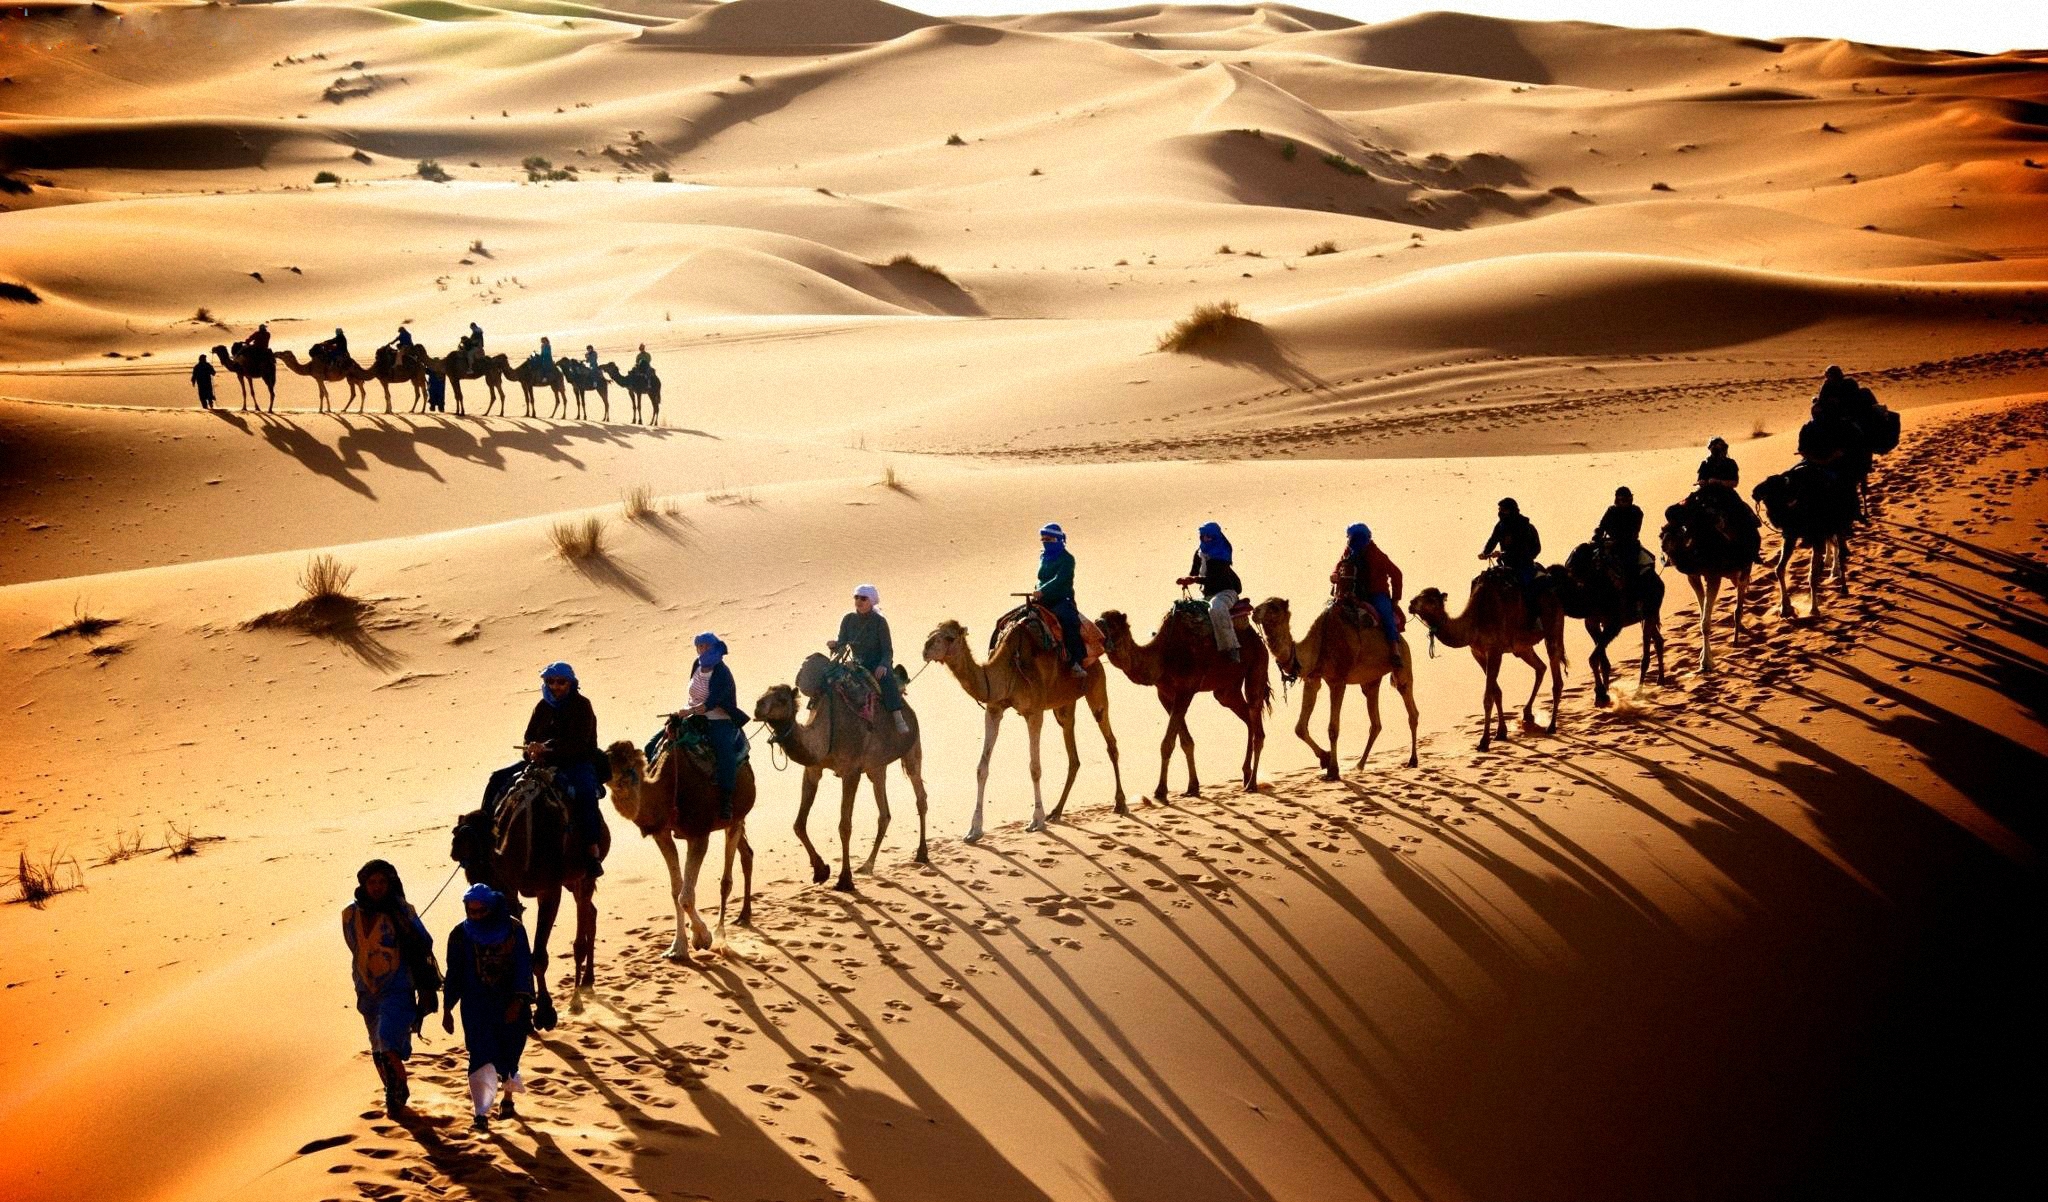 Караван давай. Верблюд Караван шелковый путь. Великий шелковый путь Караван. Караван верблюдов в пустыне.